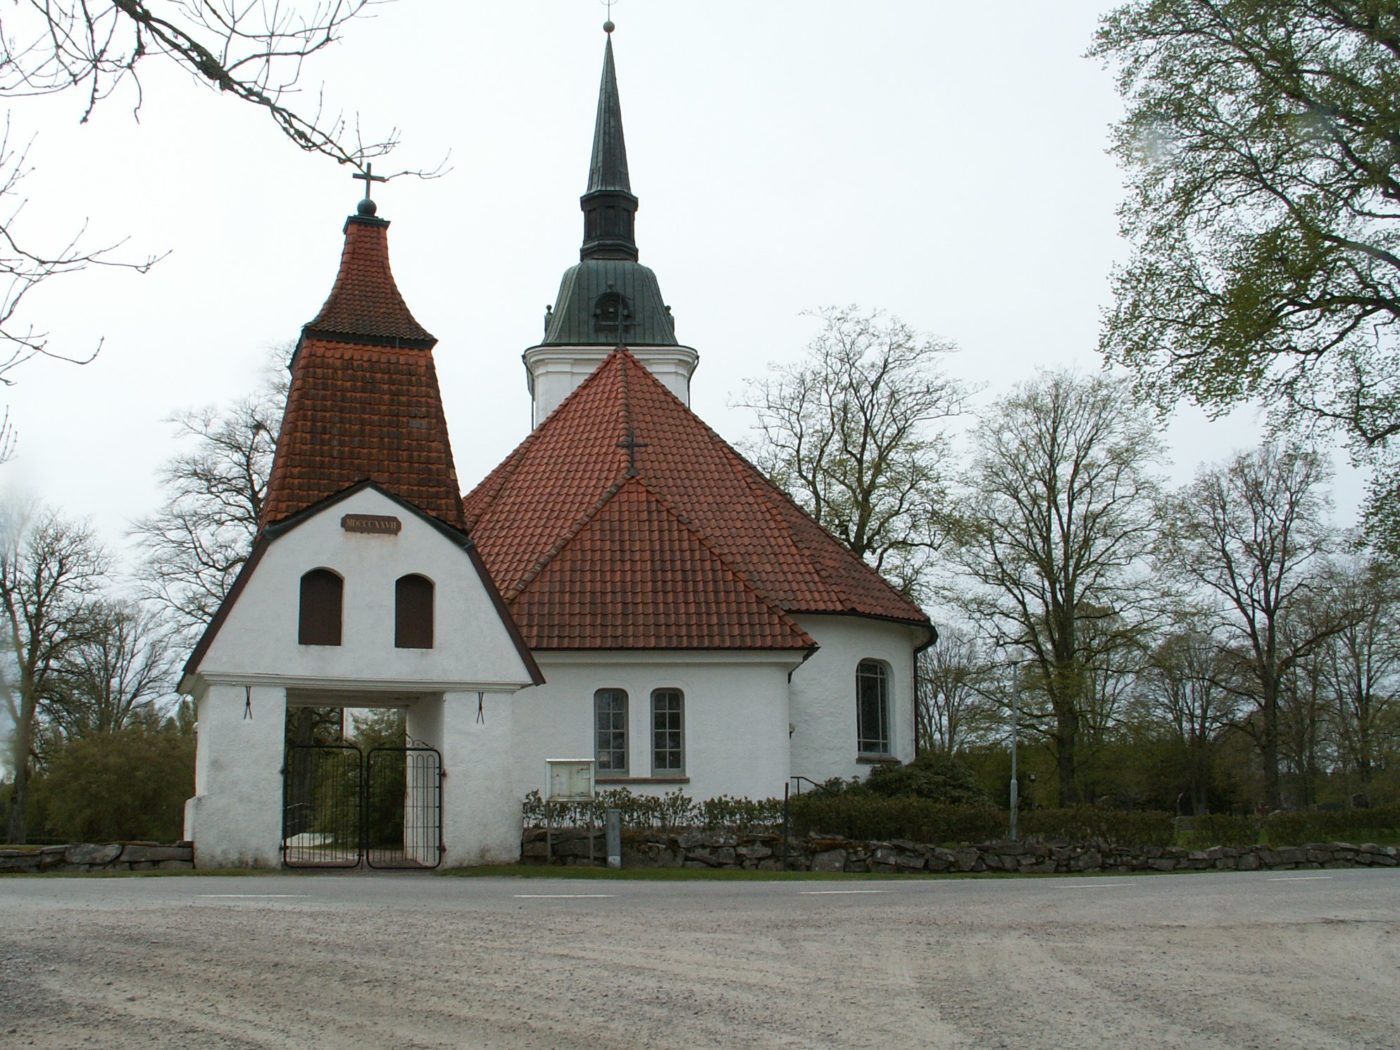 Entré in till Främmestads kyrka Skara Foto Hans Menzing